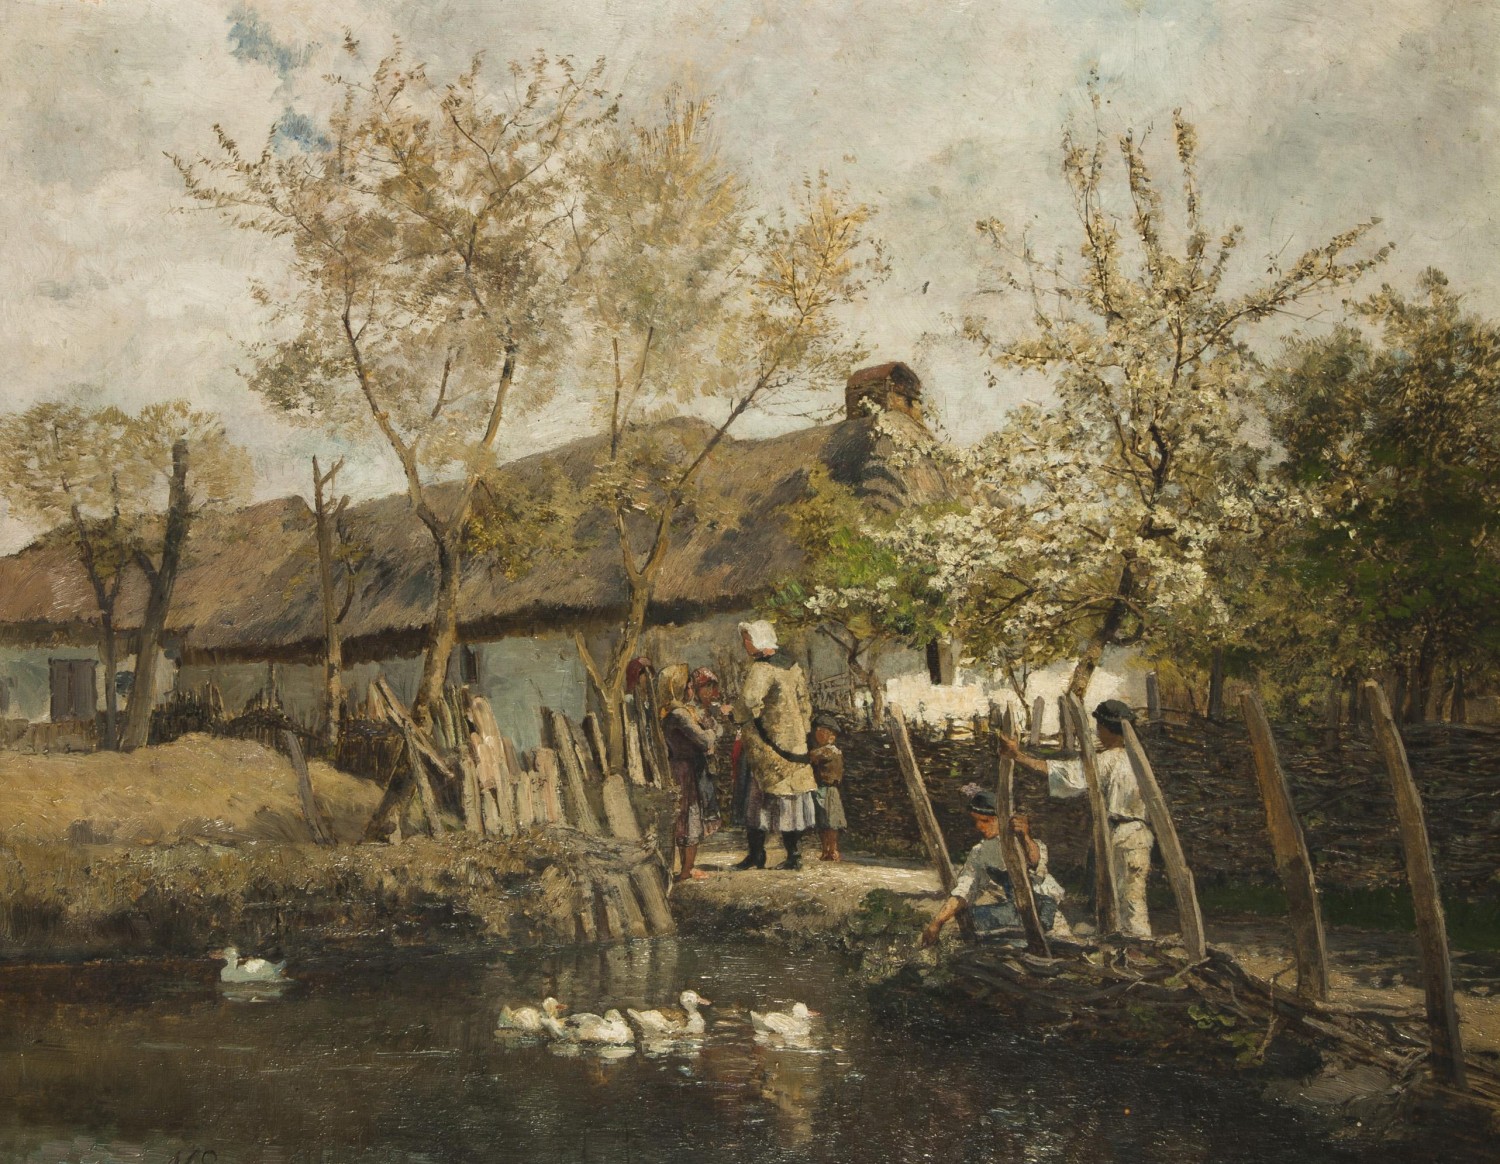 Marie Egner: Maďarská usedlost, 1880,  olej na plátně, 41 x 52 cm Dorotheum 18. 5. 2013, cena: 1 080 000 Kč